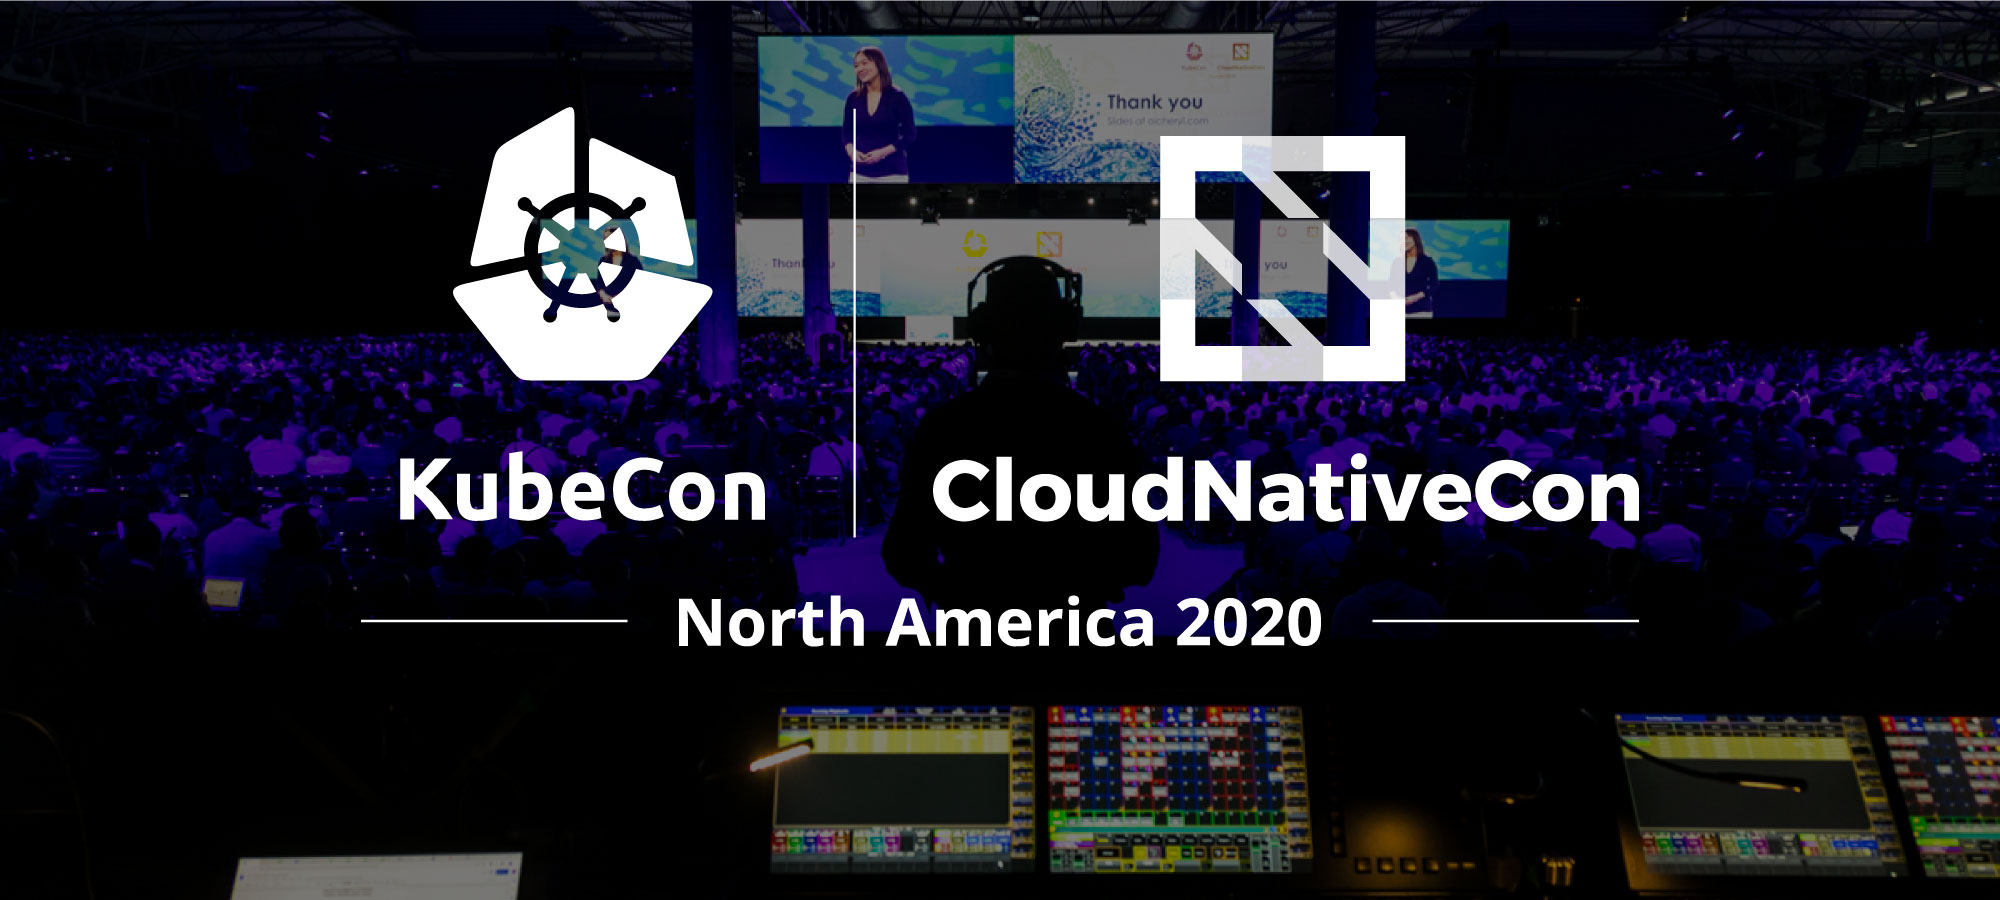 KubeCon / CloudNativeCon, North America 2020